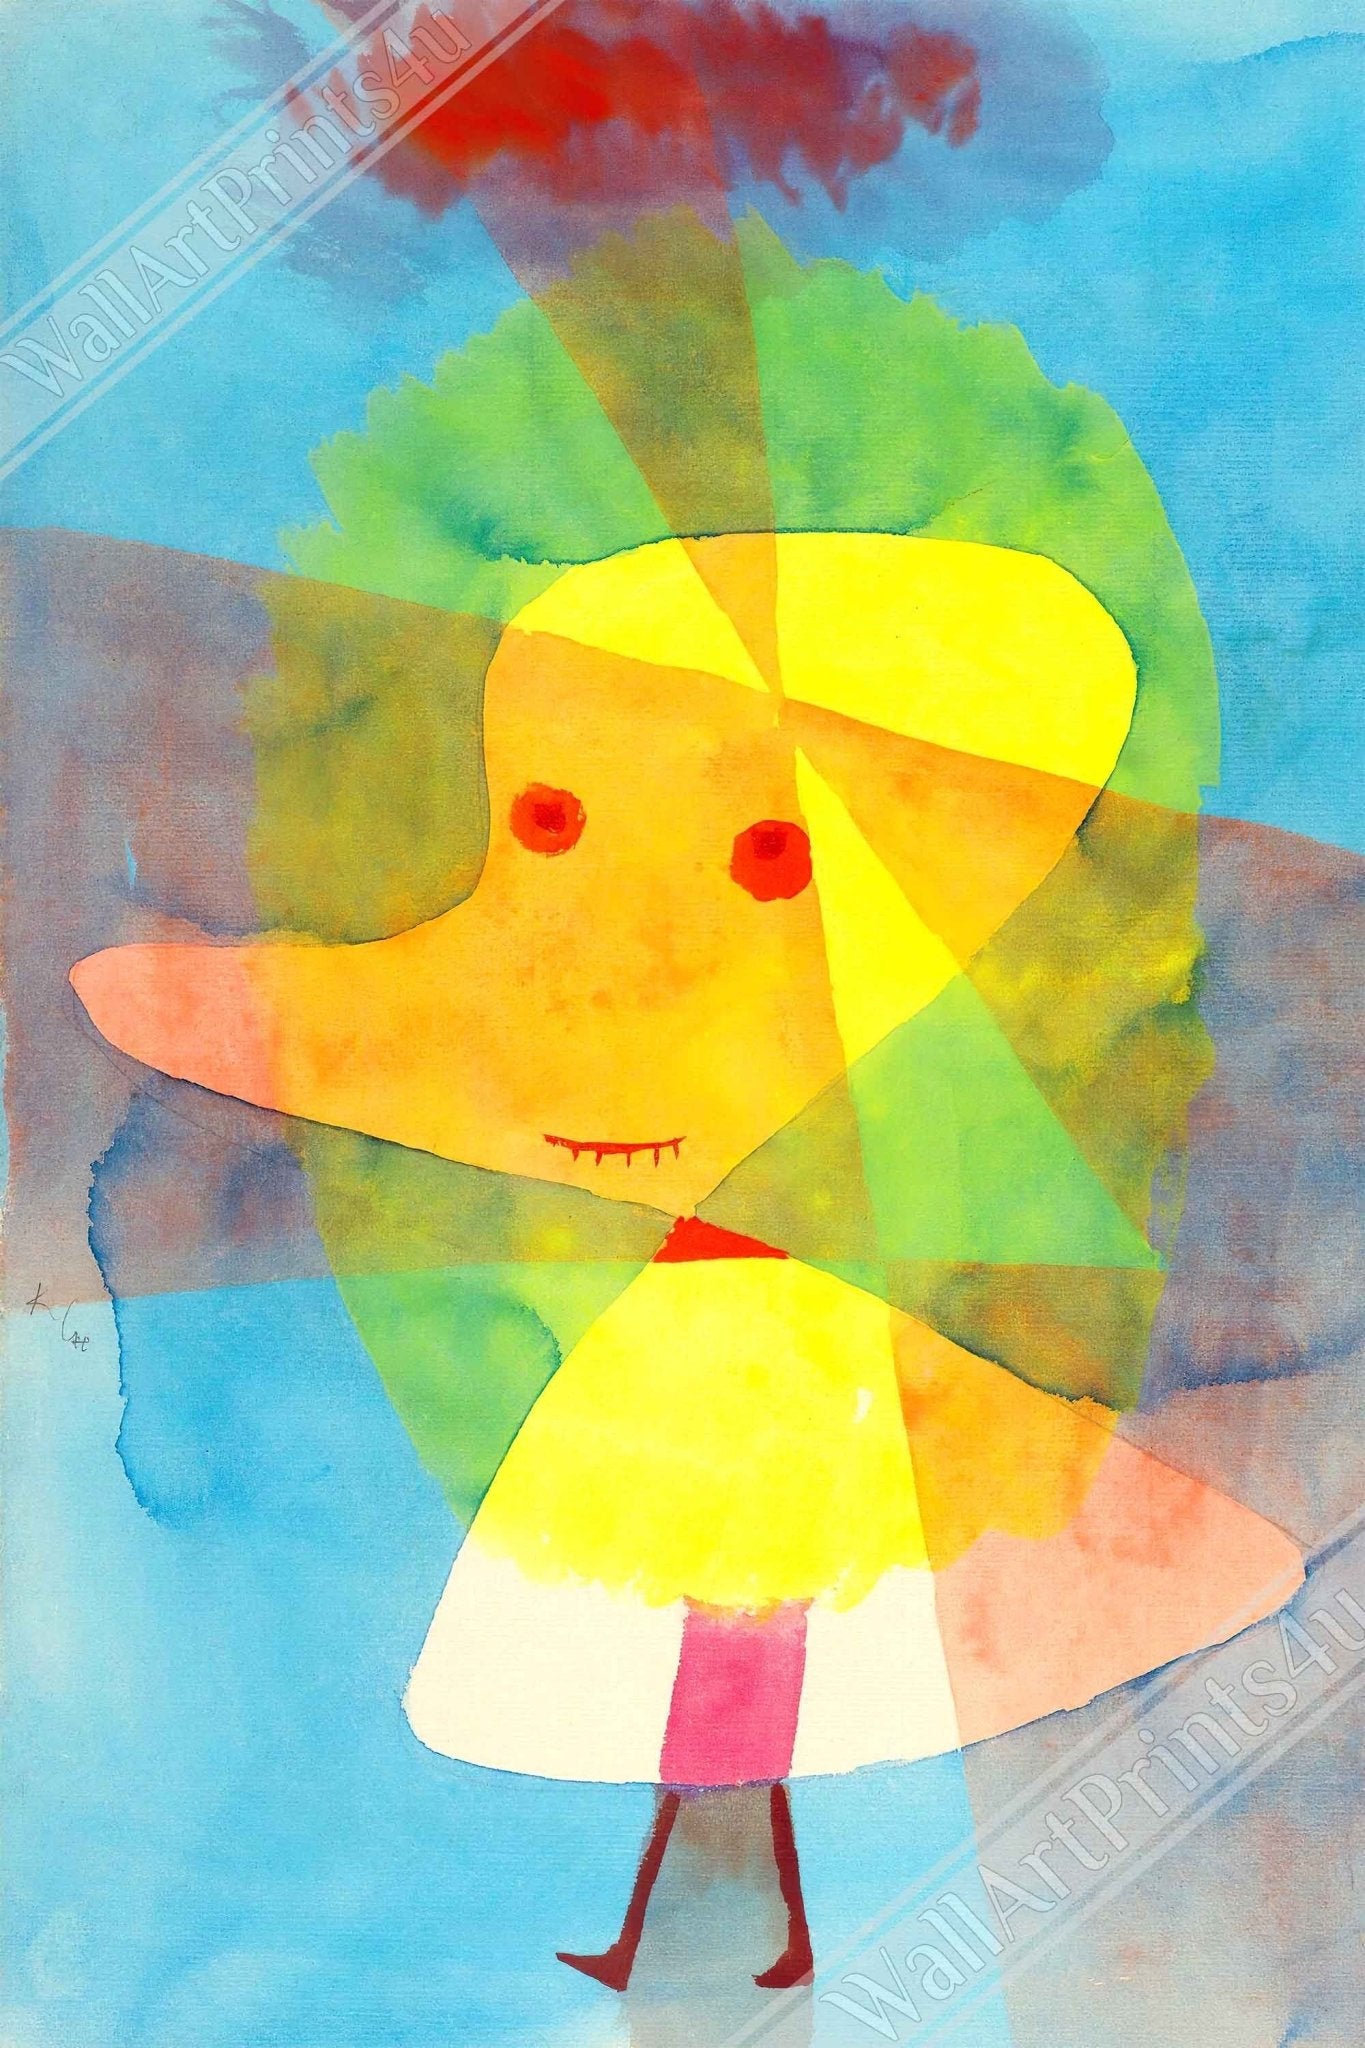 Rubber Duck Canvas Print, Paul Klee Small Garden Ghost Canvas, Paul Klee Canvass Abstract Art - WallArtPrints4U